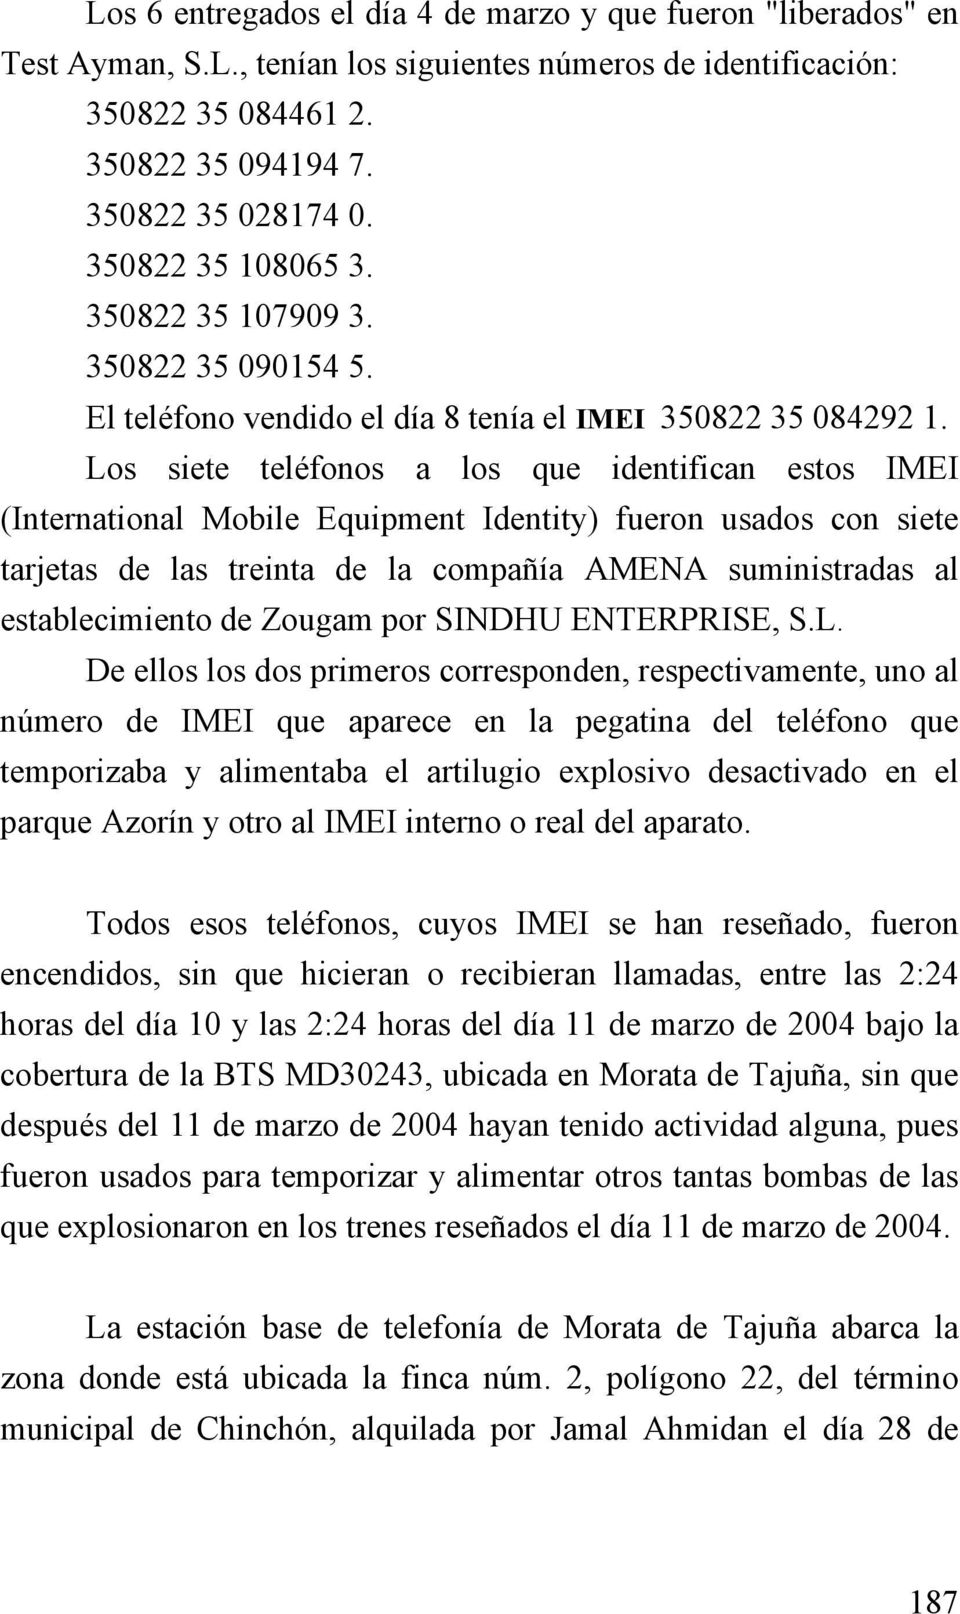 Los siete teléfonos a los que identifican estos IMEI (International Mobile Equipment Identity) fueron usados con siete tarjetas de las treinta de la compañía AMENA suministradas al establecimiento de